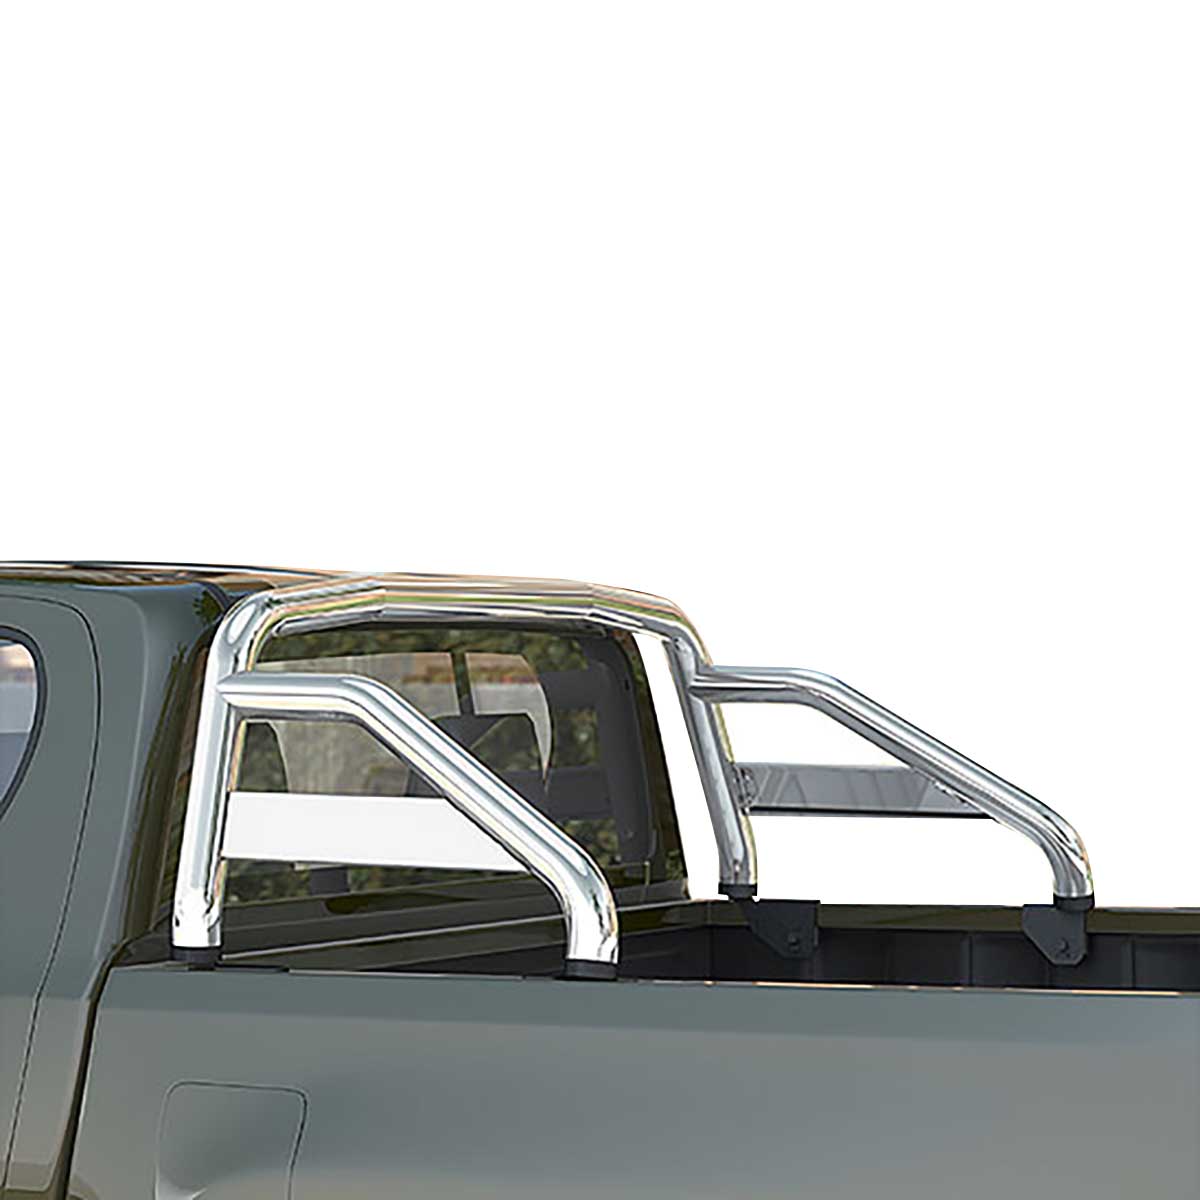 Überrollbügel Edelstahl schwarz für MT Roll des Toyota Hilux 4x4